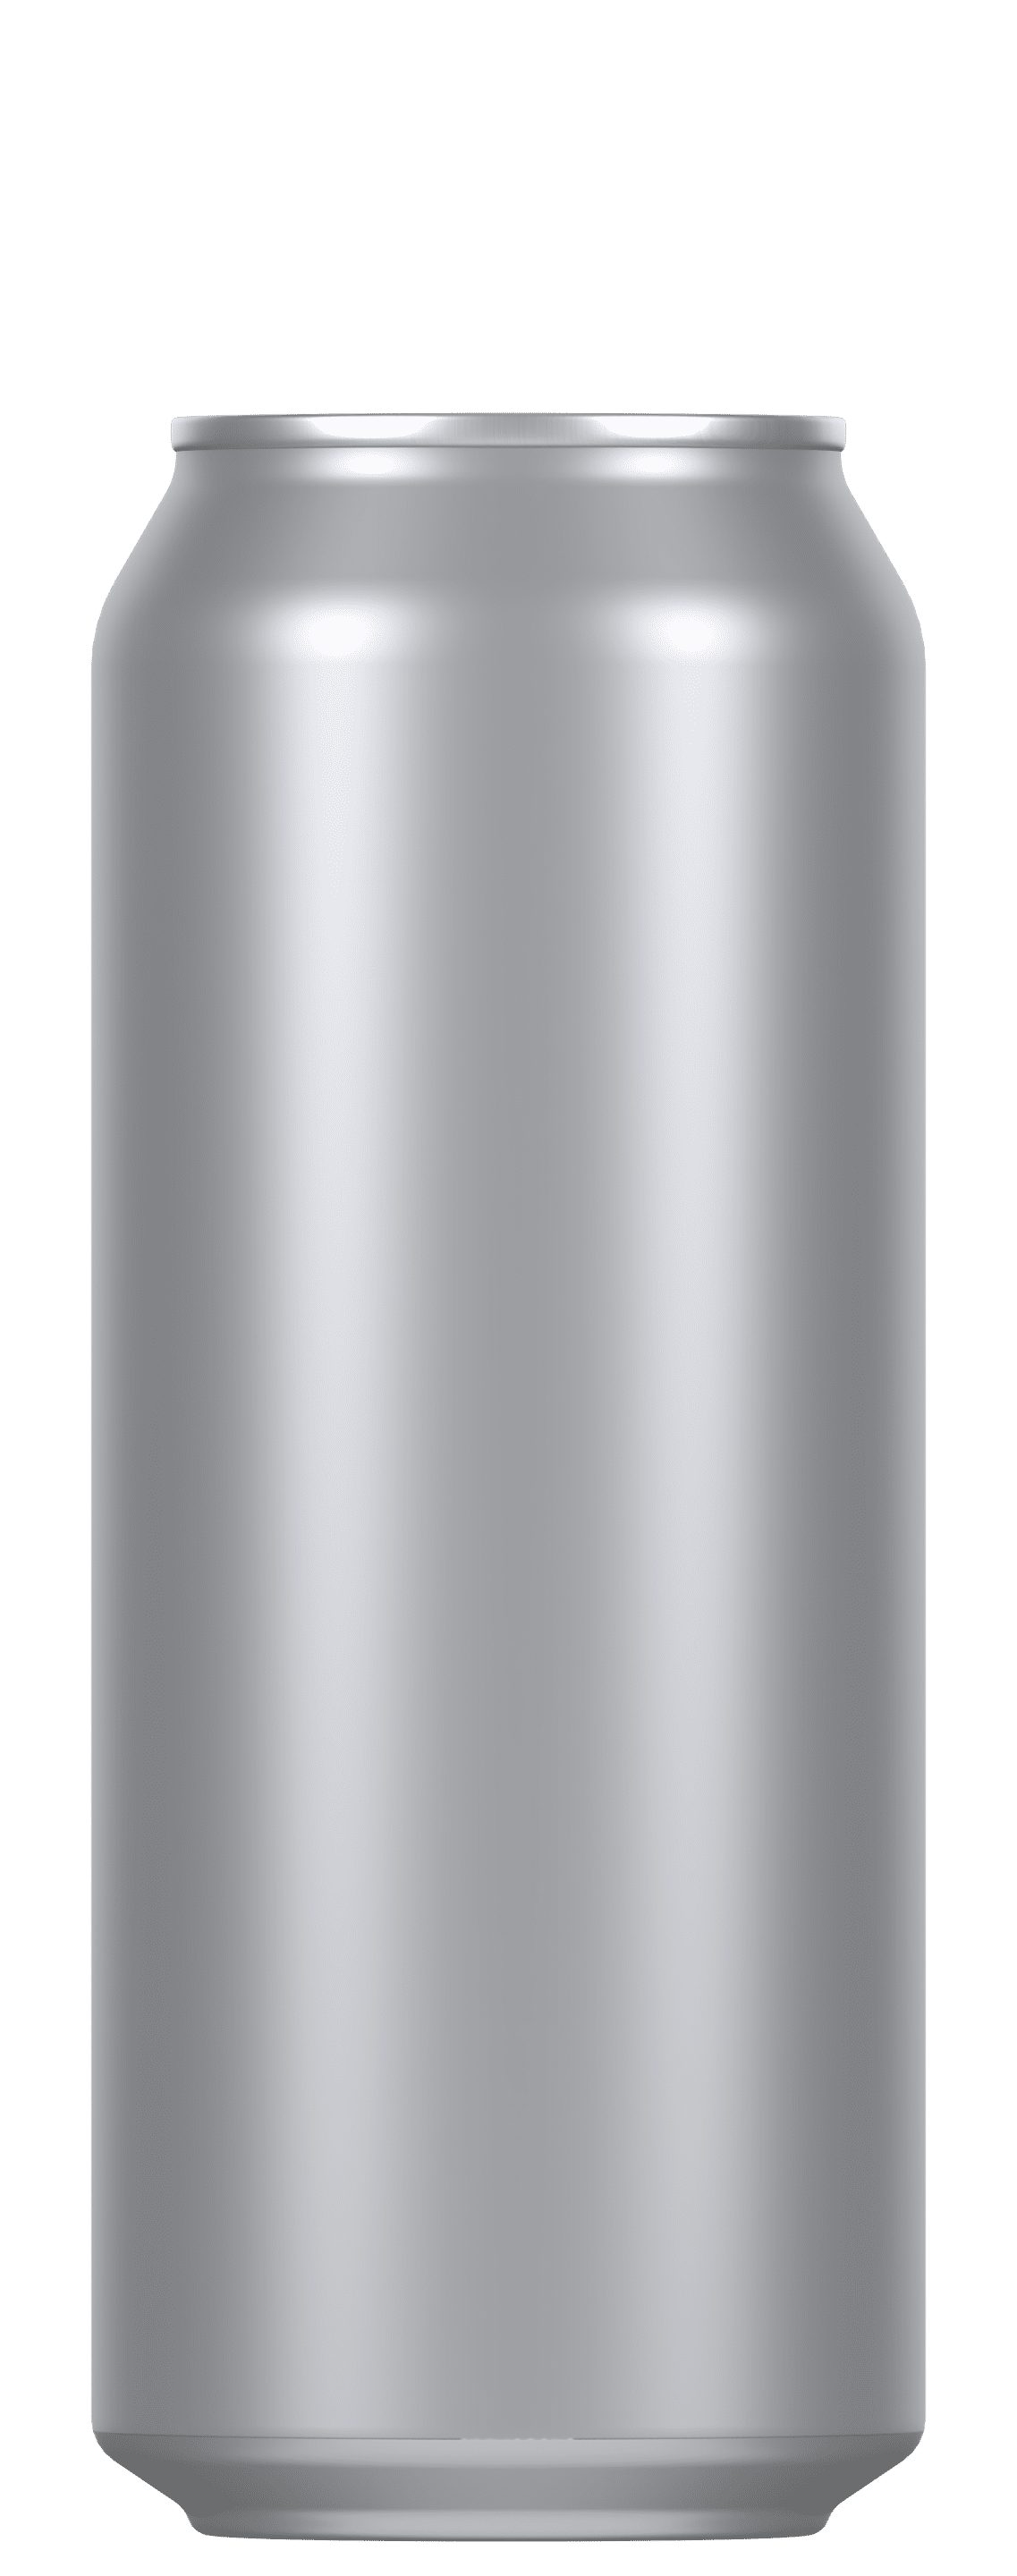 Aluminium blik voor inblikken en bier 500 ml, zilver